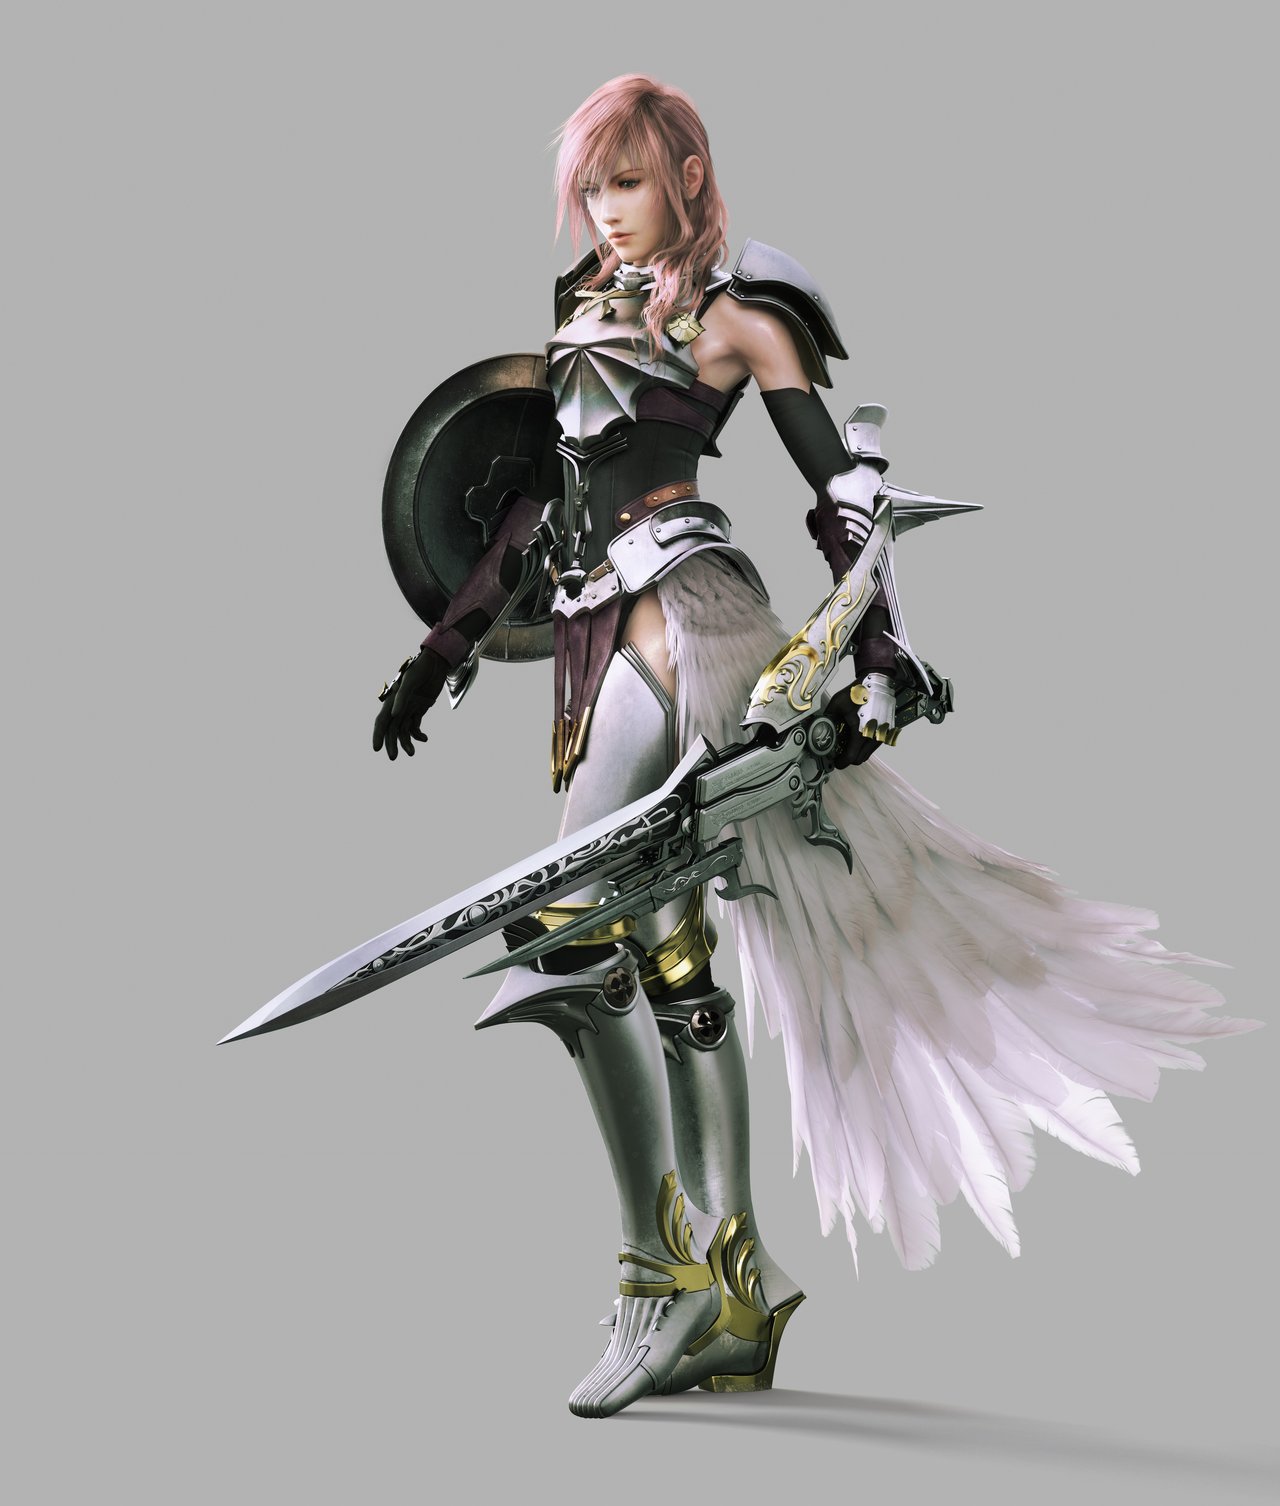 Final-Fantasy-XIII-2-Lightning-Artwork-lightning-farron-25706284-1280-1506.jpg